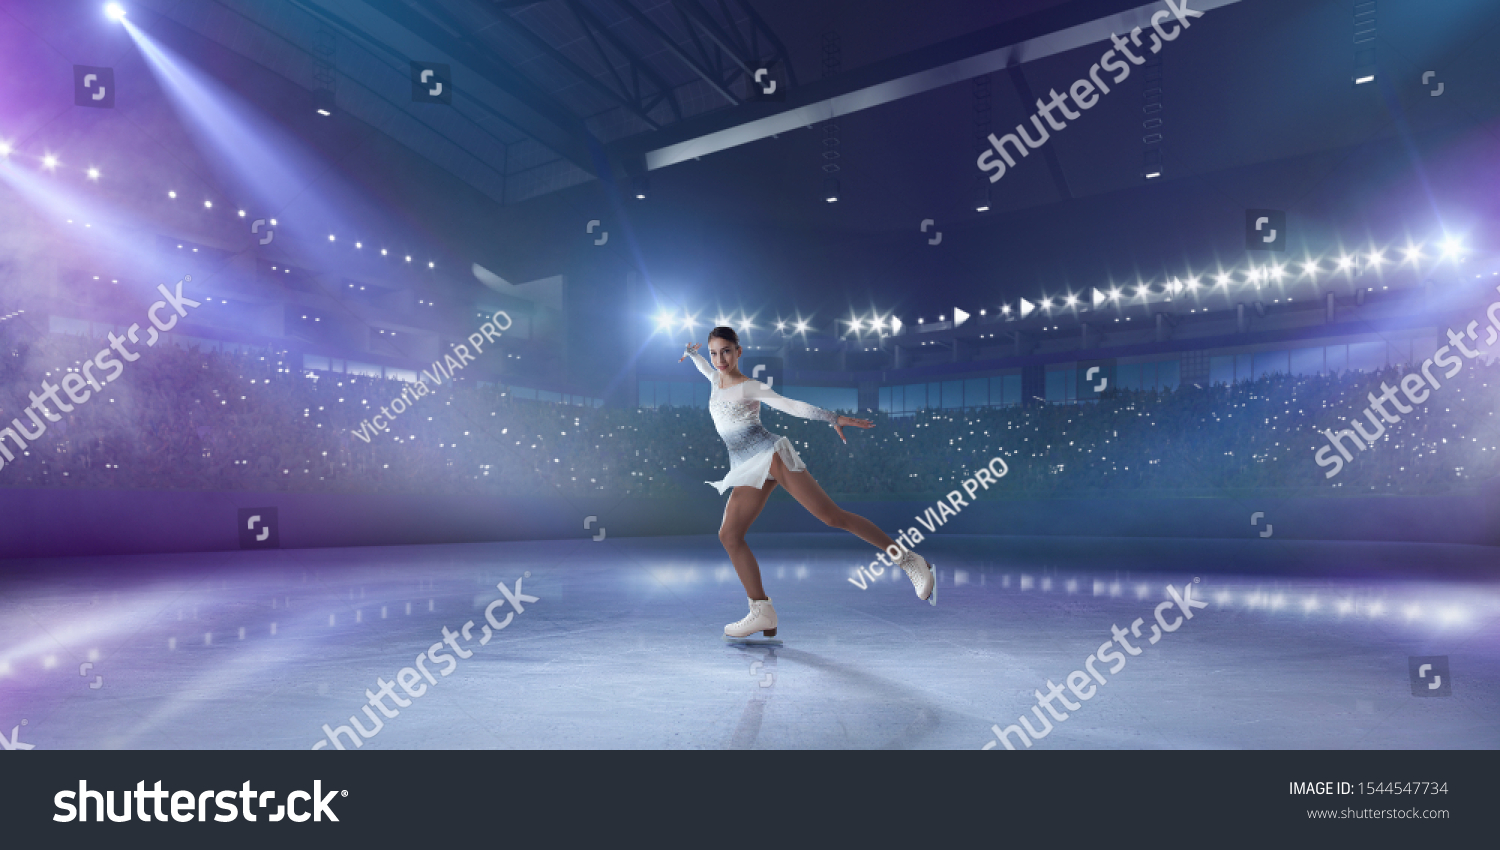 Figure skating girl in ice arena. #1544547734